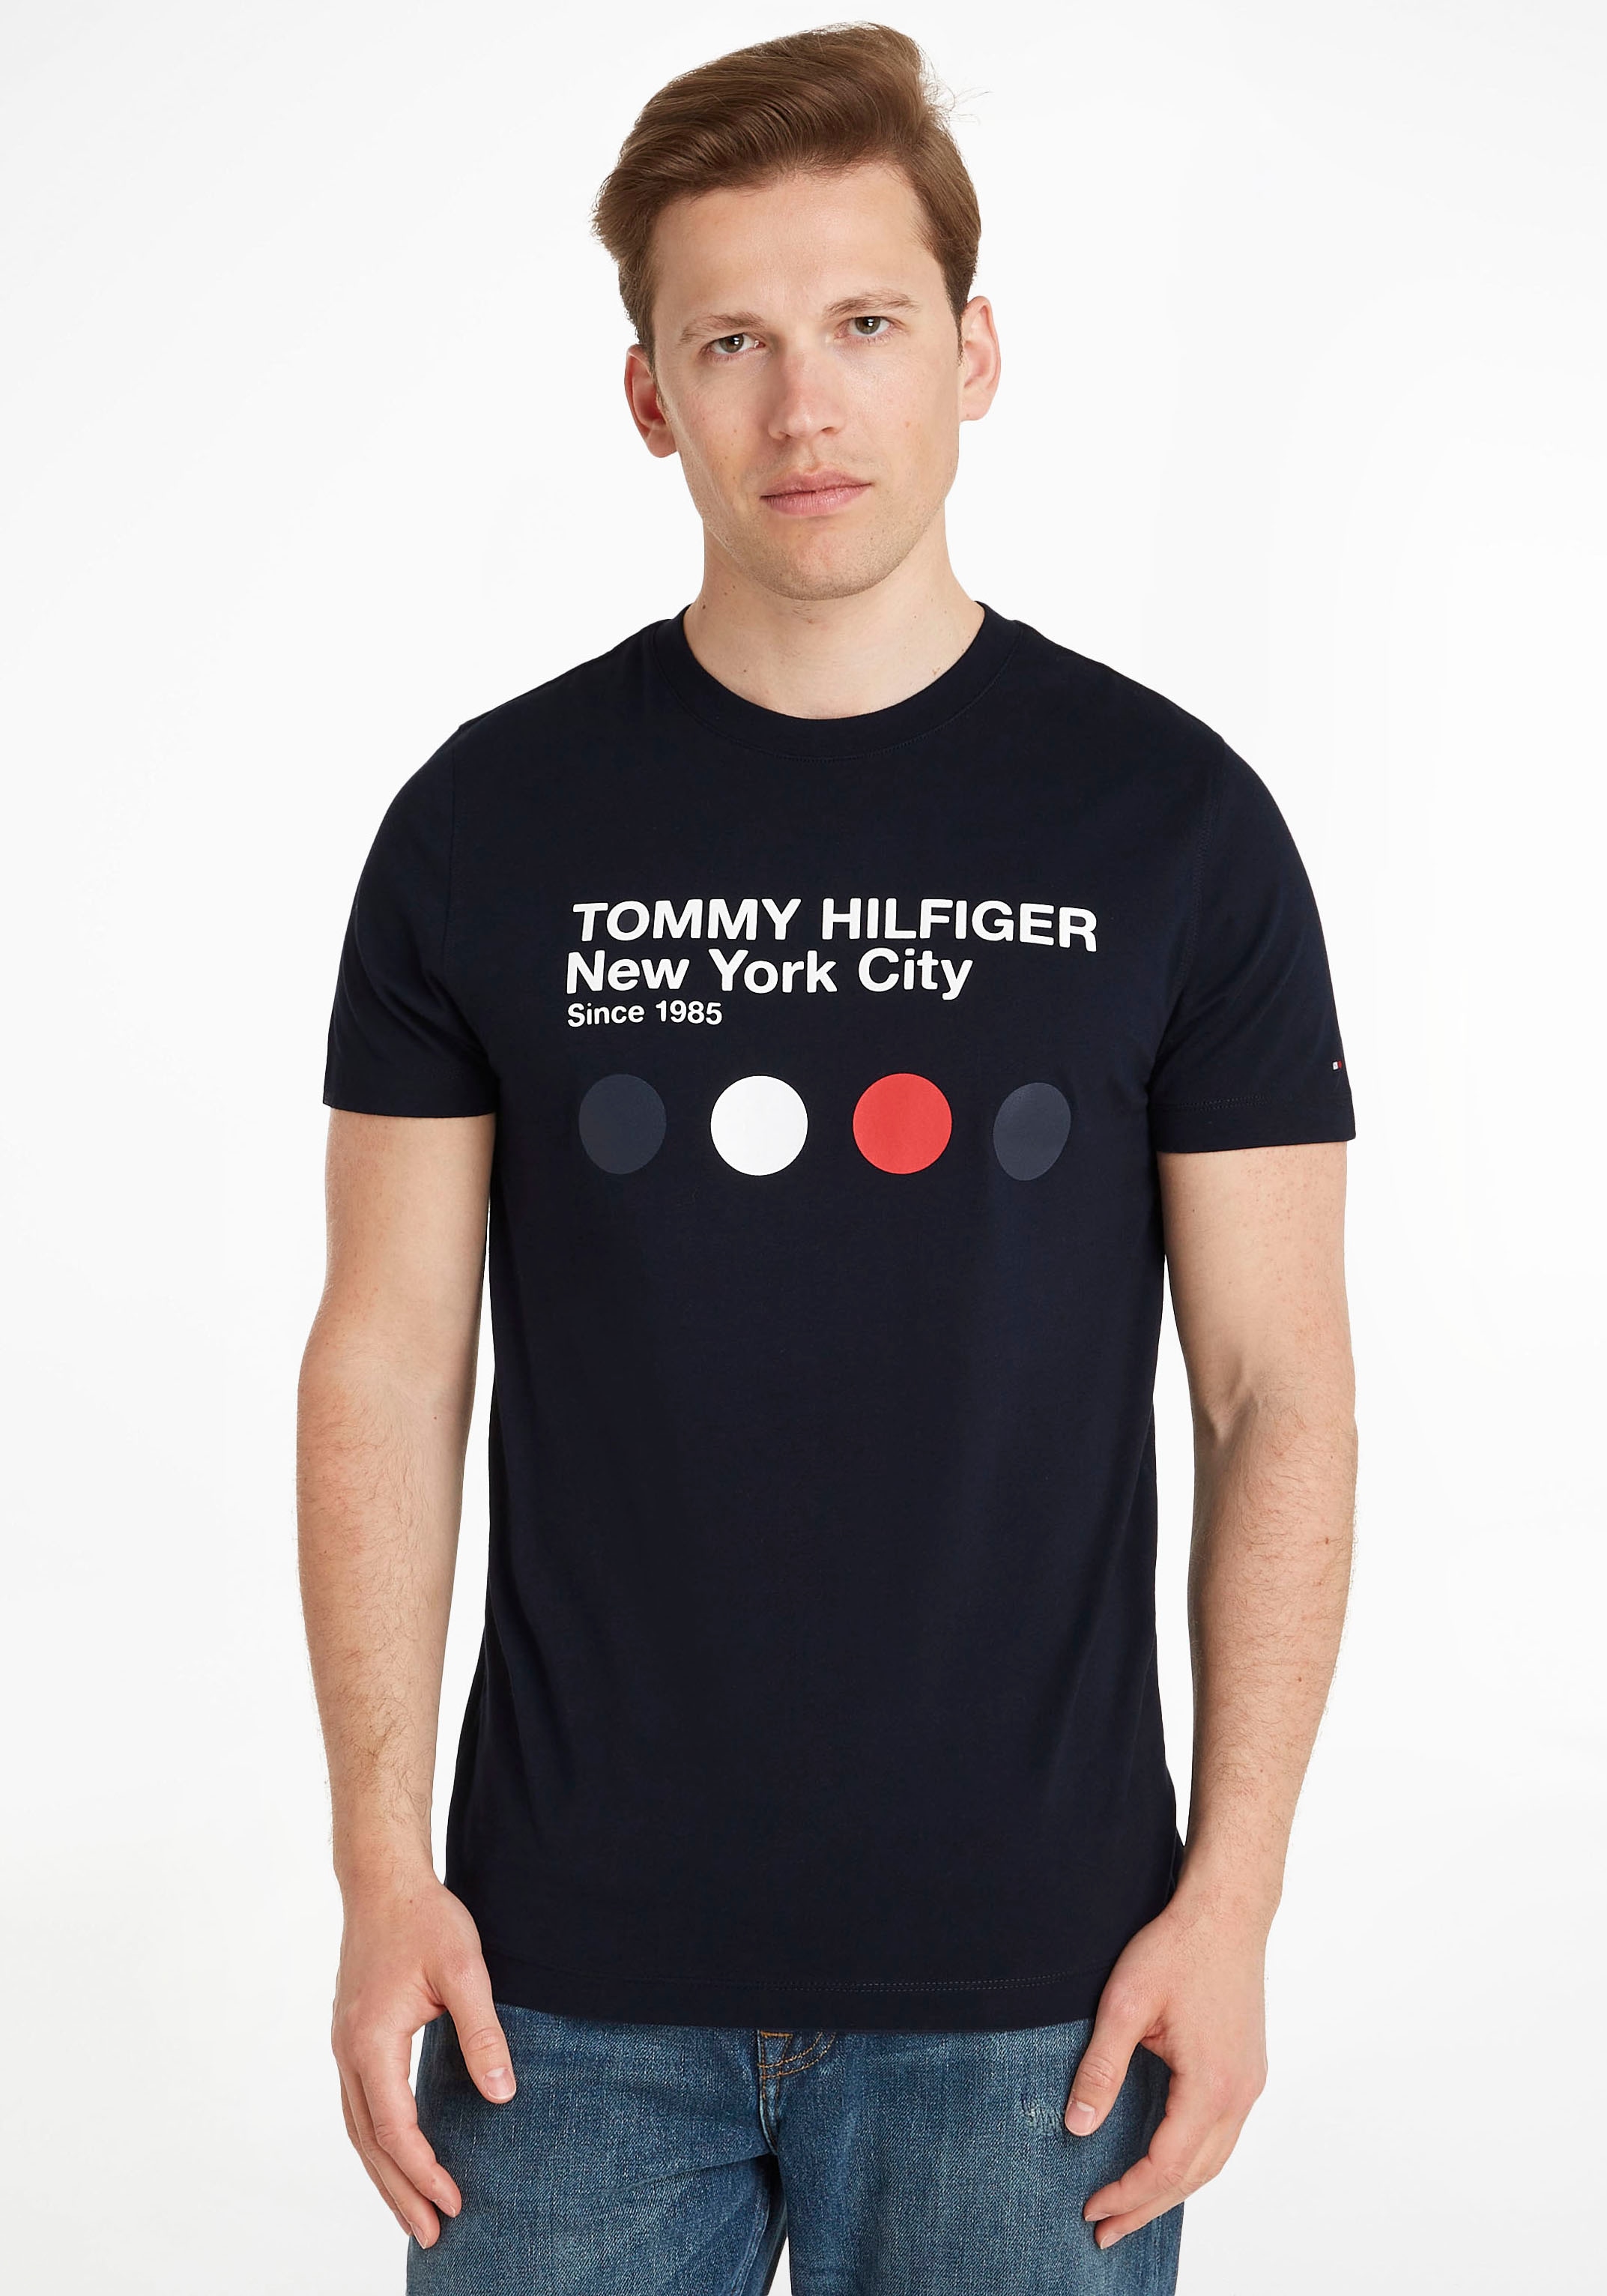 TOMMY HILFIGER Marškinėliai »METRO DOT GRAPHIC TEE« s...